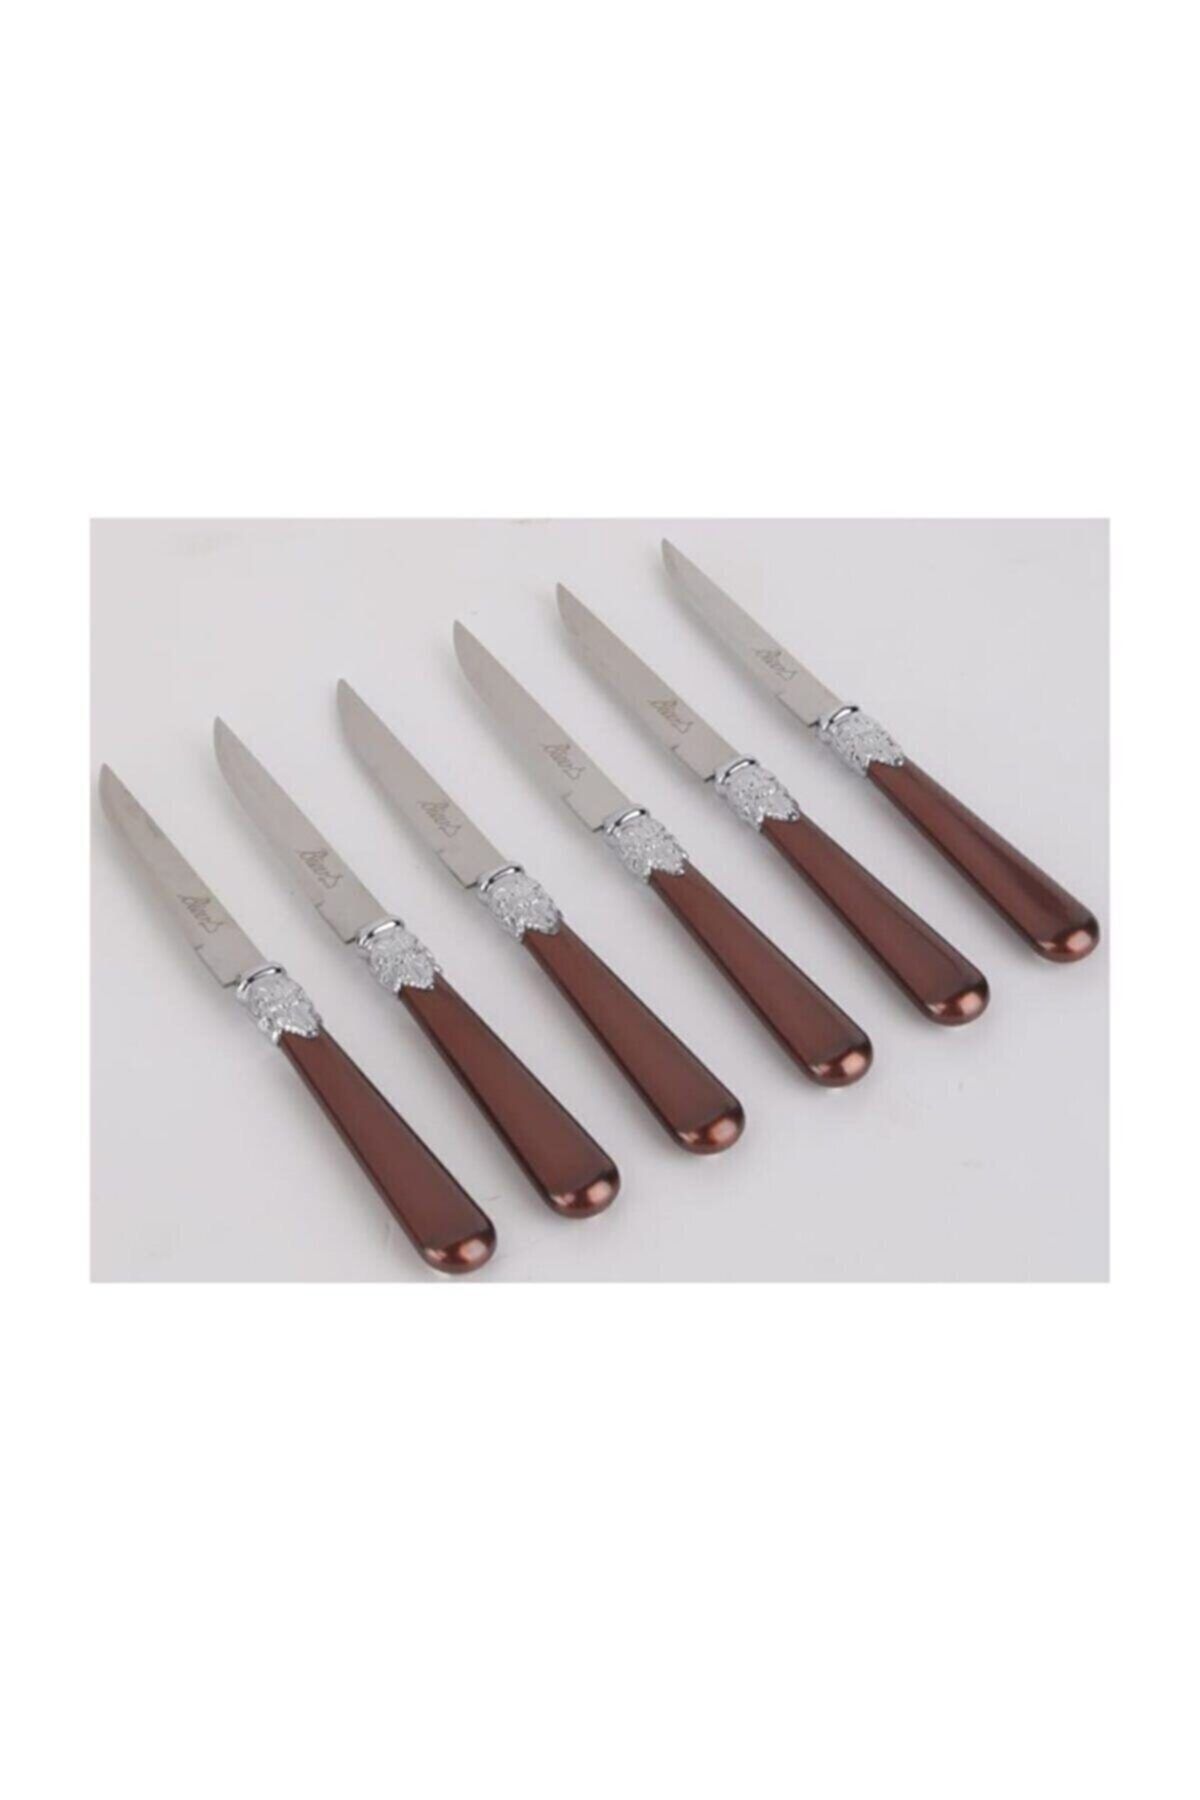 Biev Sedefli Kahverengi Melam&çelik 6 Lı Tatlı Bıçağı Sgr1503 - 6